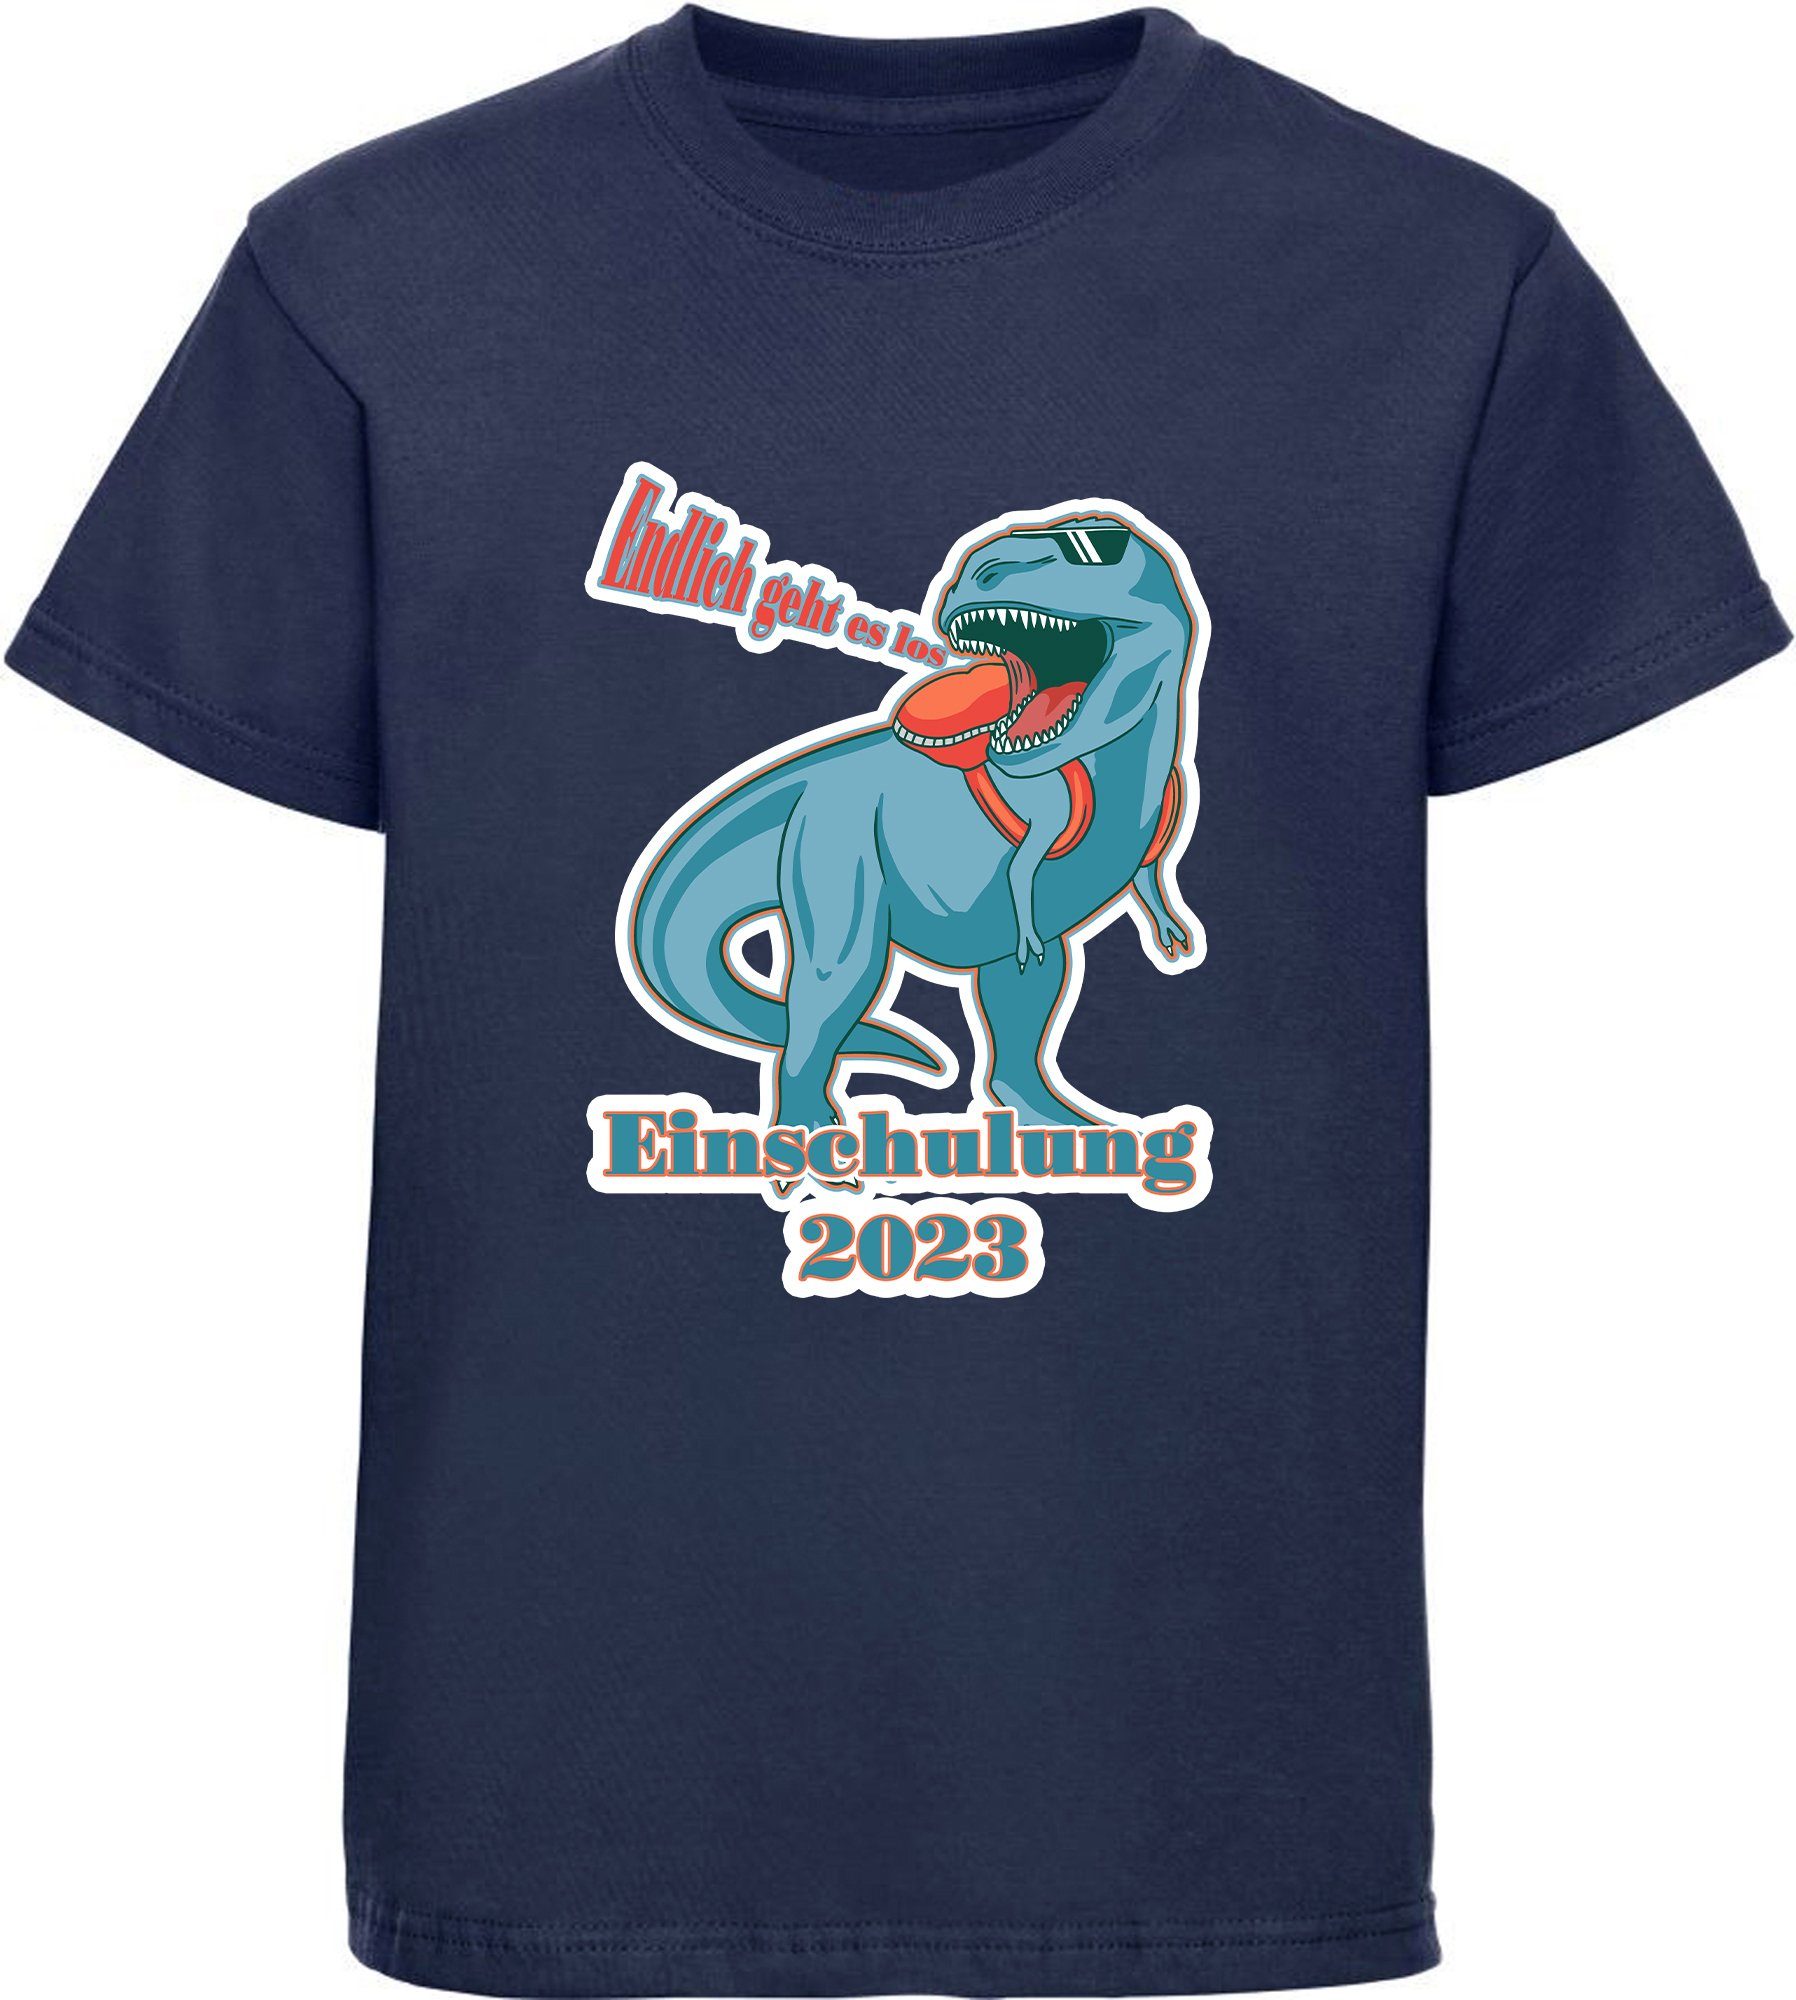 MyDesign24 Print-Shirt bedrucktes Kinder T-Shirt T-Rex Endlich Einschulung Aufdruck, geht schwarz, i37 los blau, Baumwollshirt weiß, 2023 - es rot